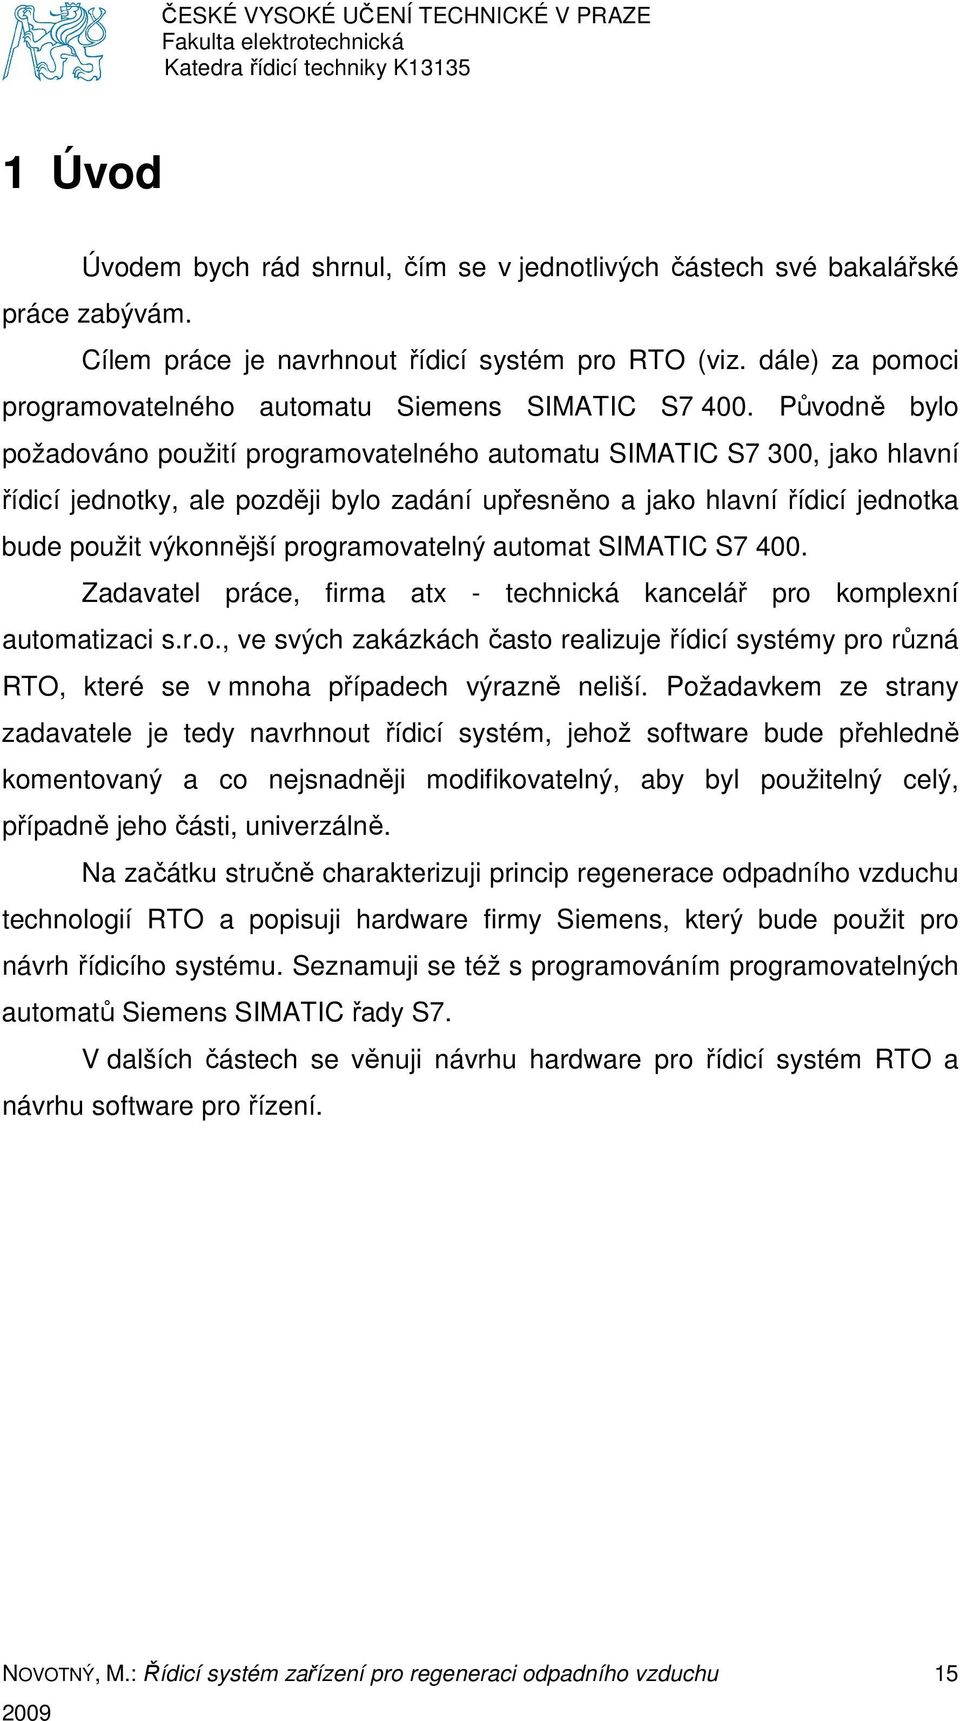 Původně bylo požadováno použití programovatelného automatu SIMATIC S7 300, jako hlavní řídicí jednotky, ale později bylo zadání upřesněno a jako hlavní řídicí jednotka bude použit výkonnější